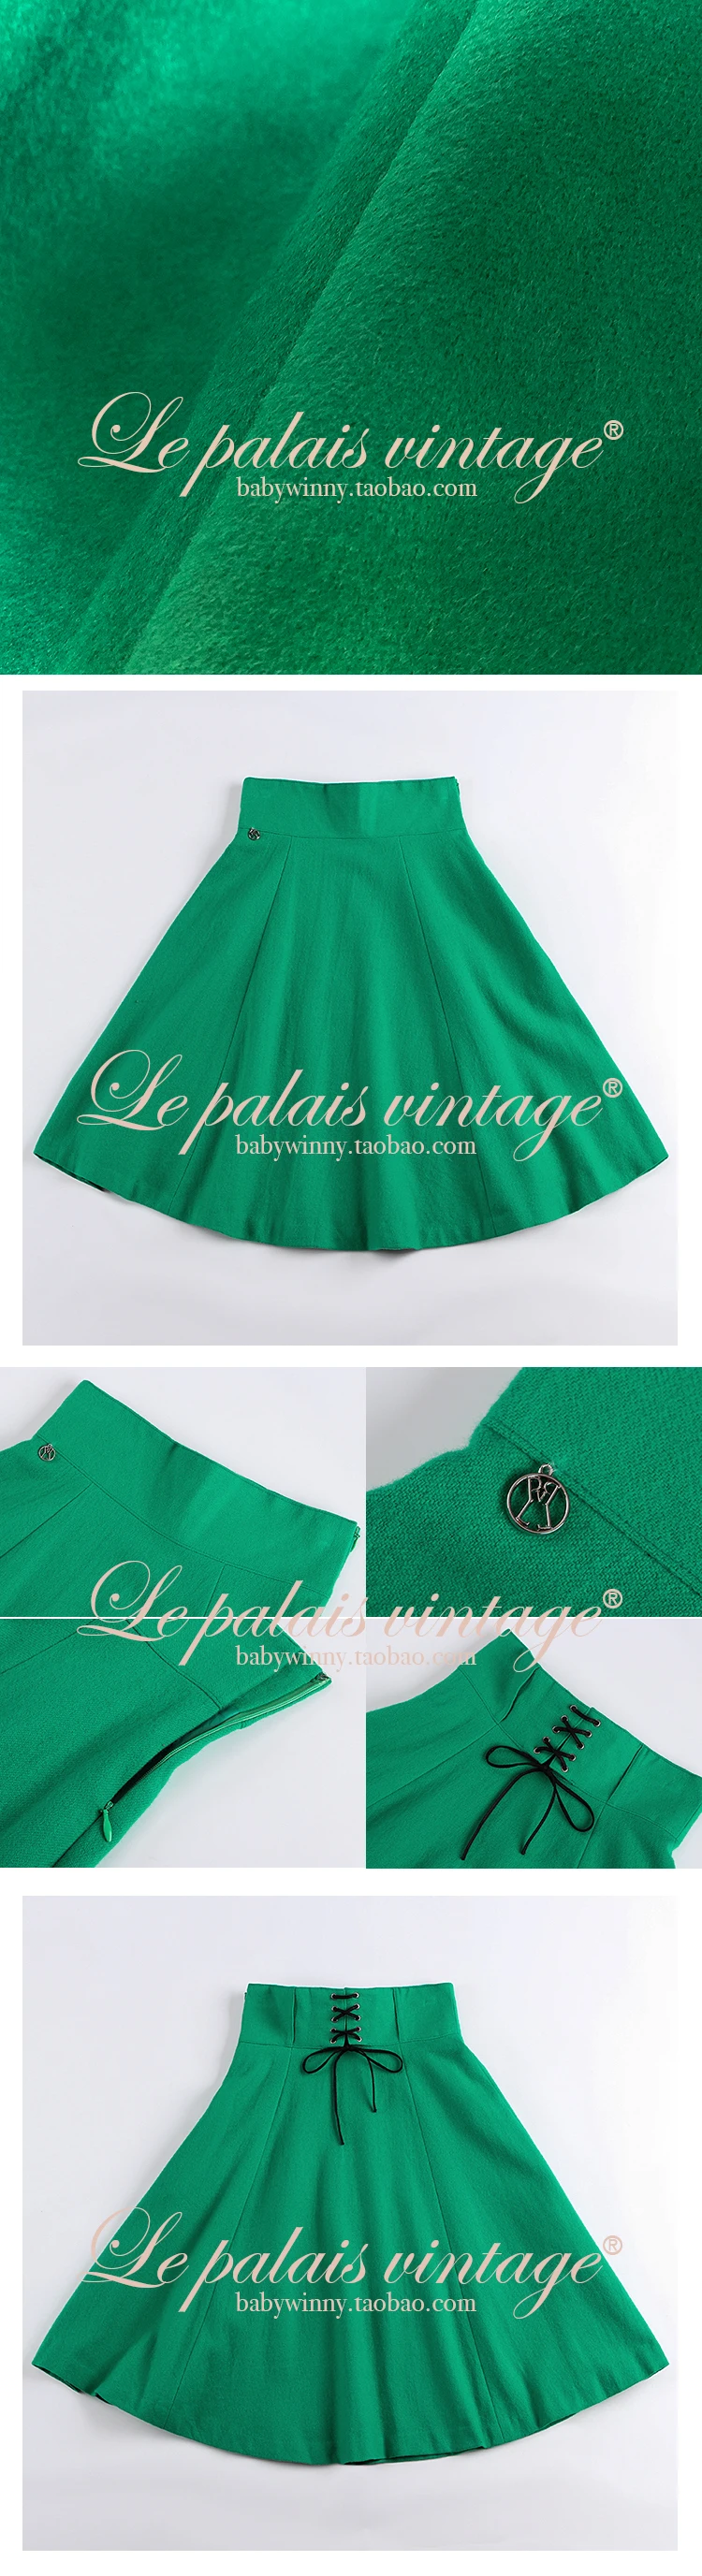 Le Palais Винтаж оригинальная винтажная кашемировая зеленая юбка с высокой талией до колена зимние плотные юбки для женщин